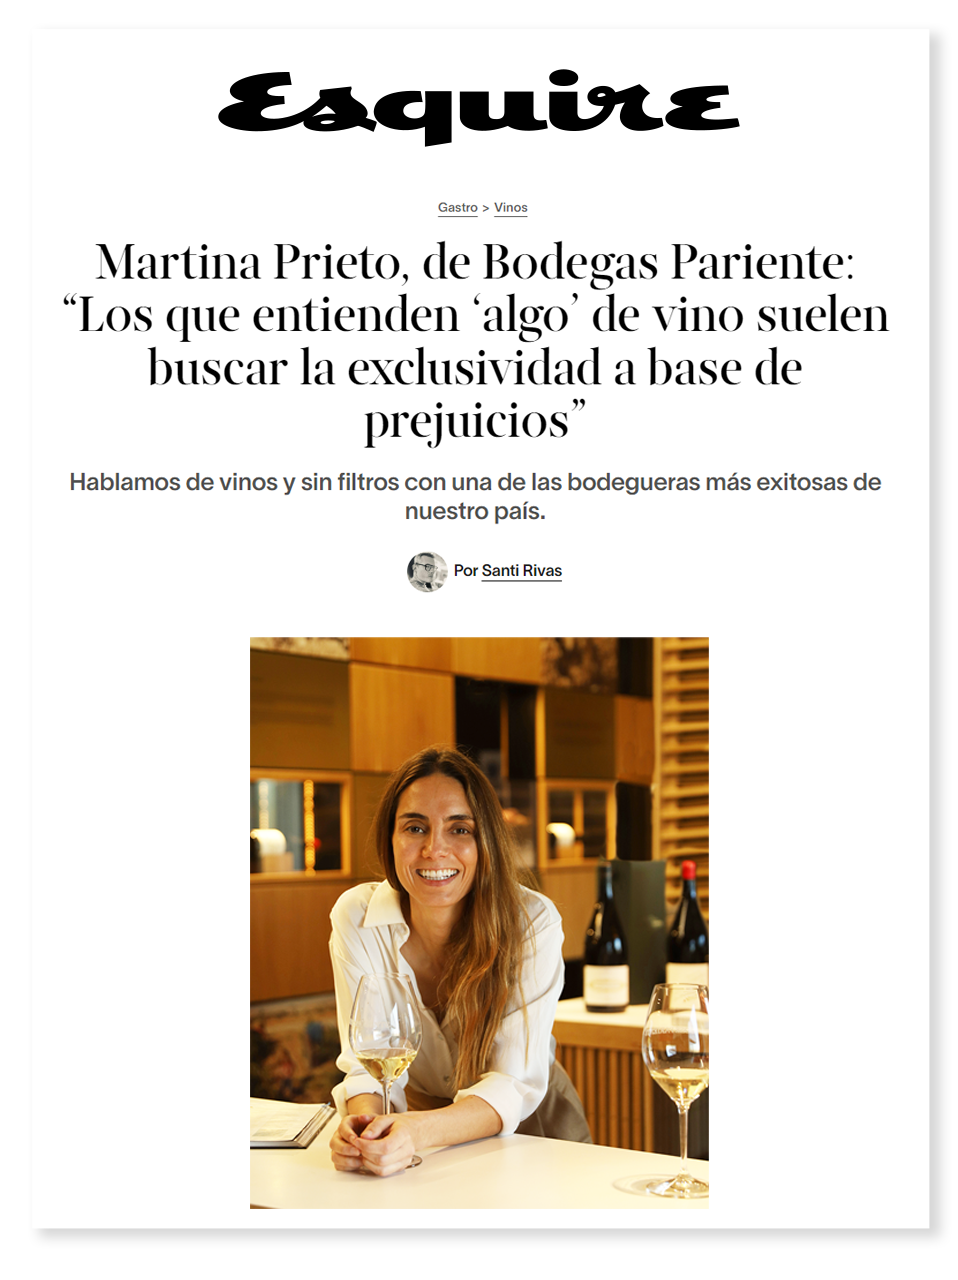 Esquire Martina Prieto